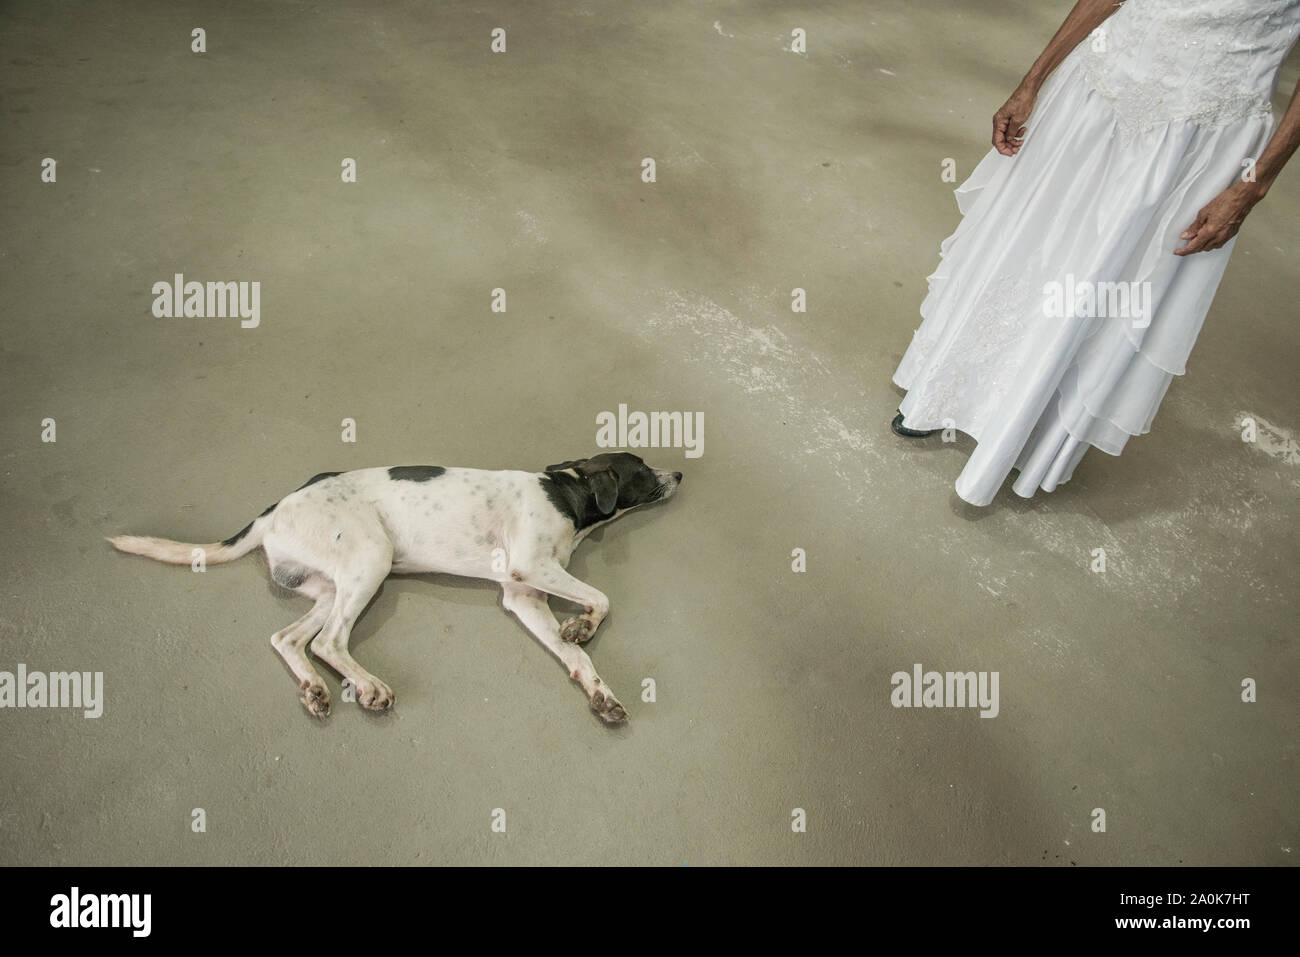 Dog lying on floor beside bride with wedding dress Stock Photo